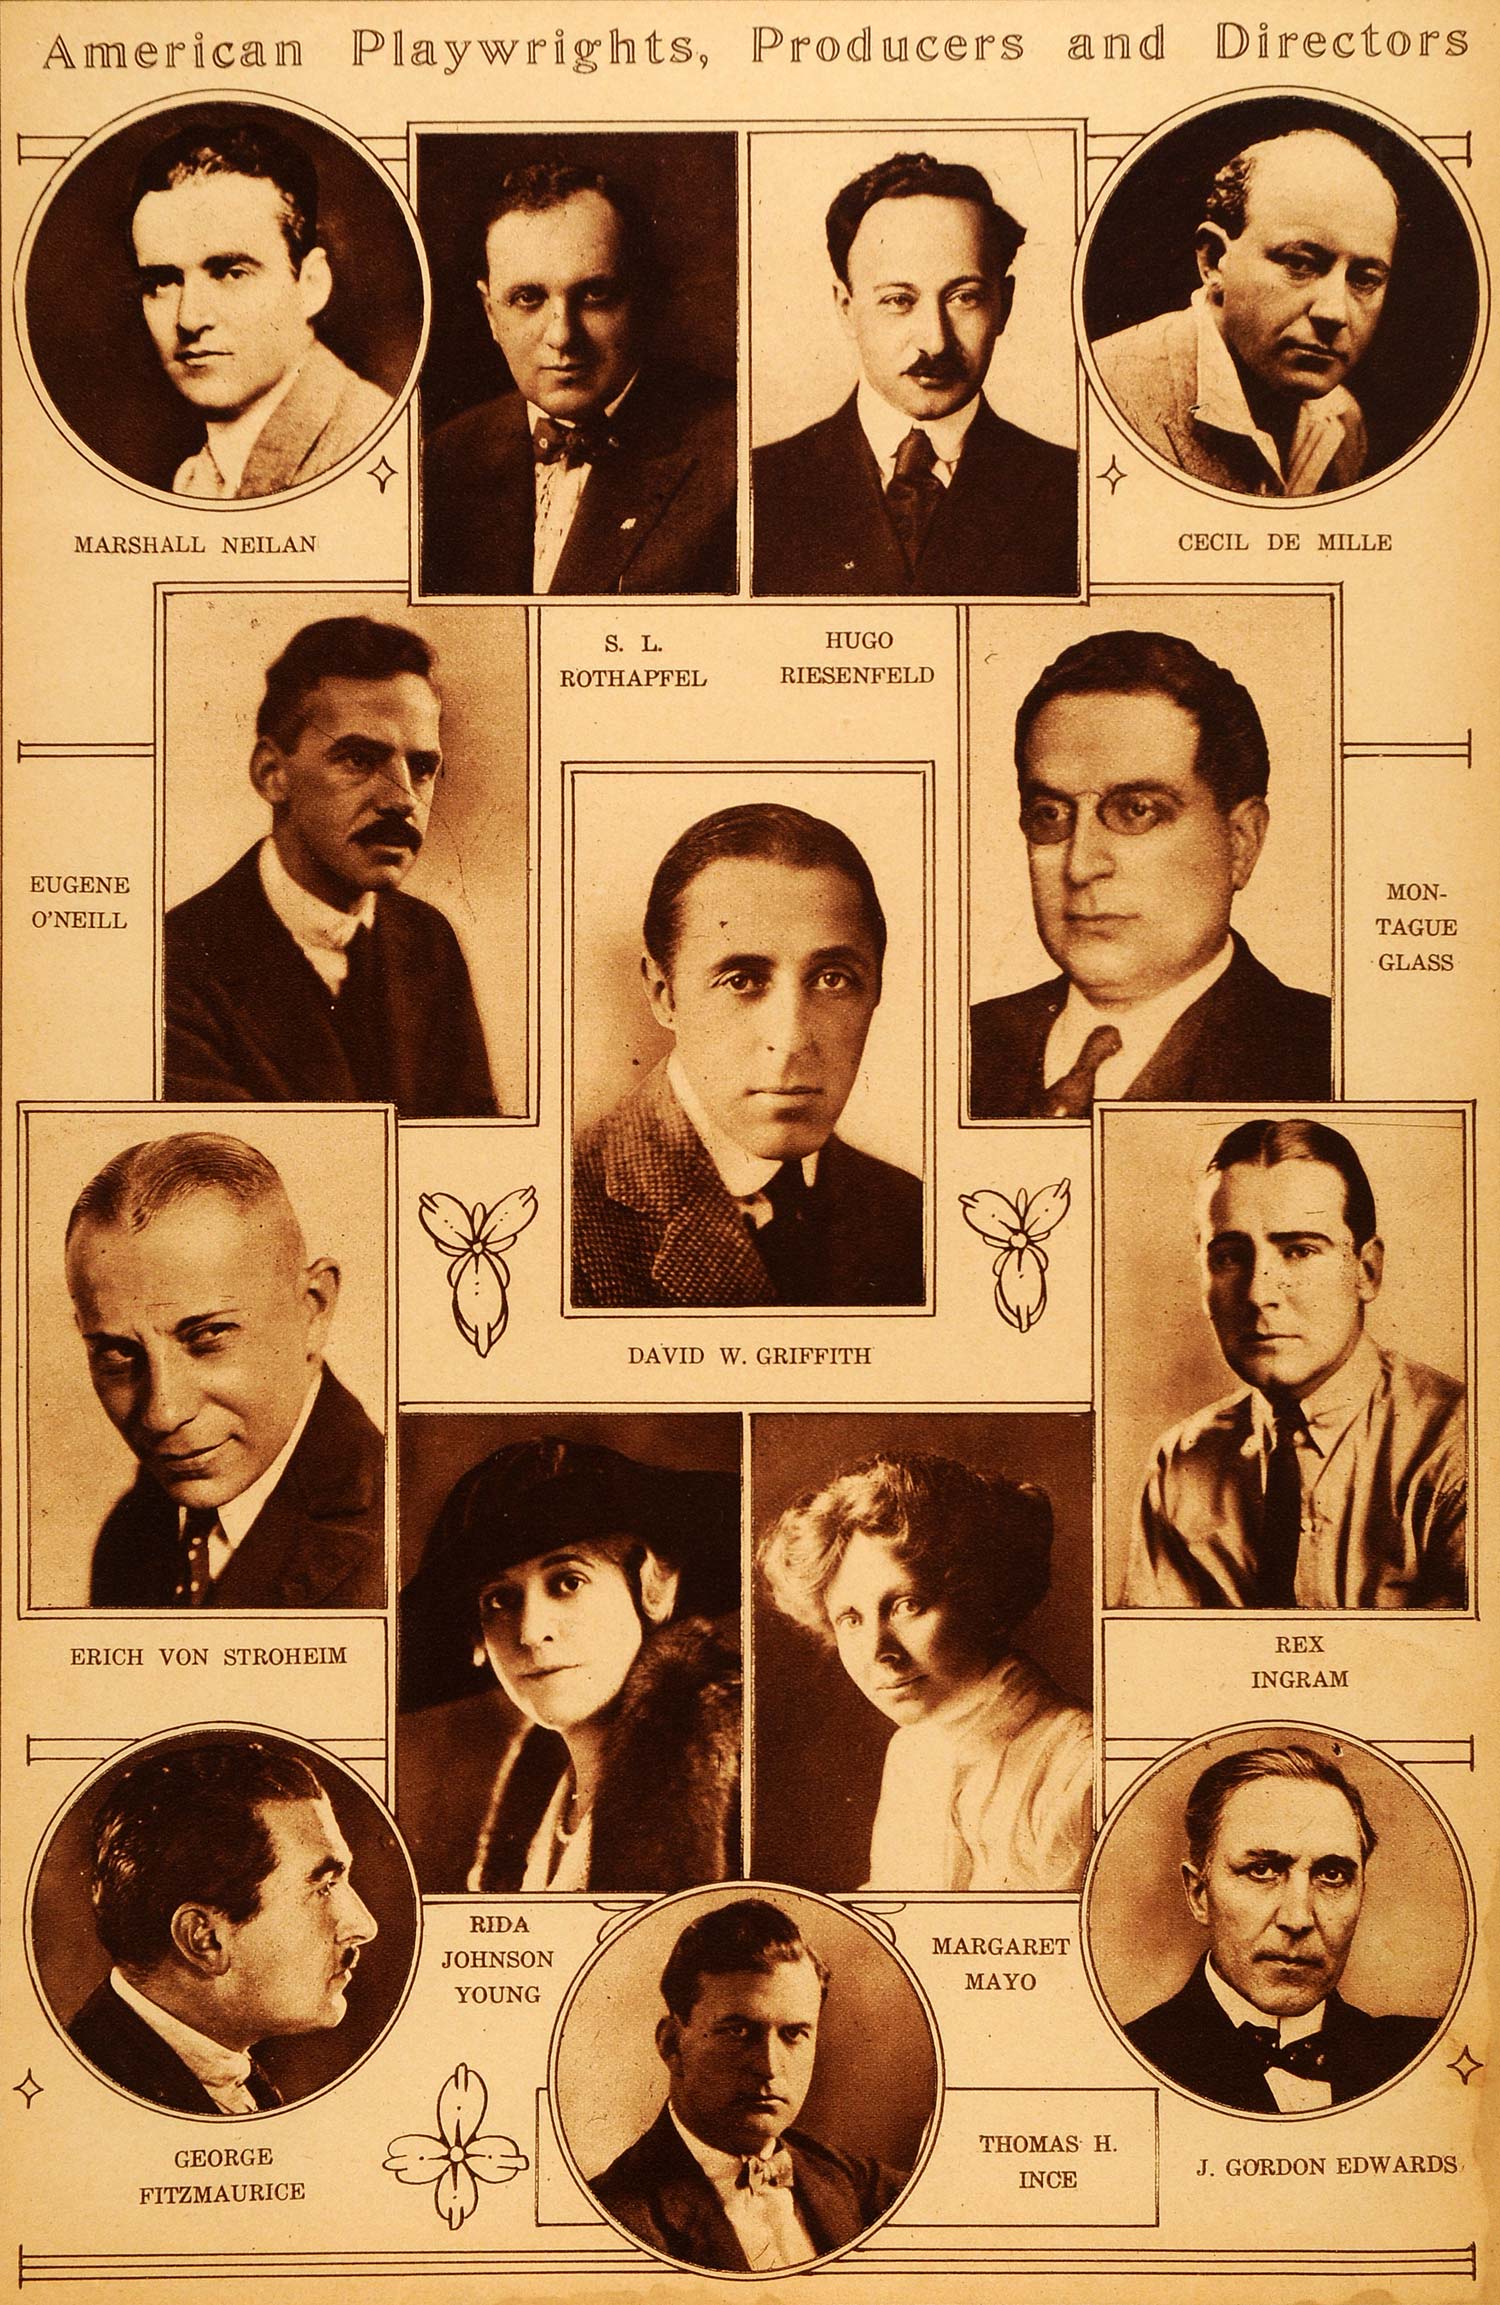 1922 Rotogravure Margaret Mayo DeMille David W. Griffith Erich von Stroheim Film